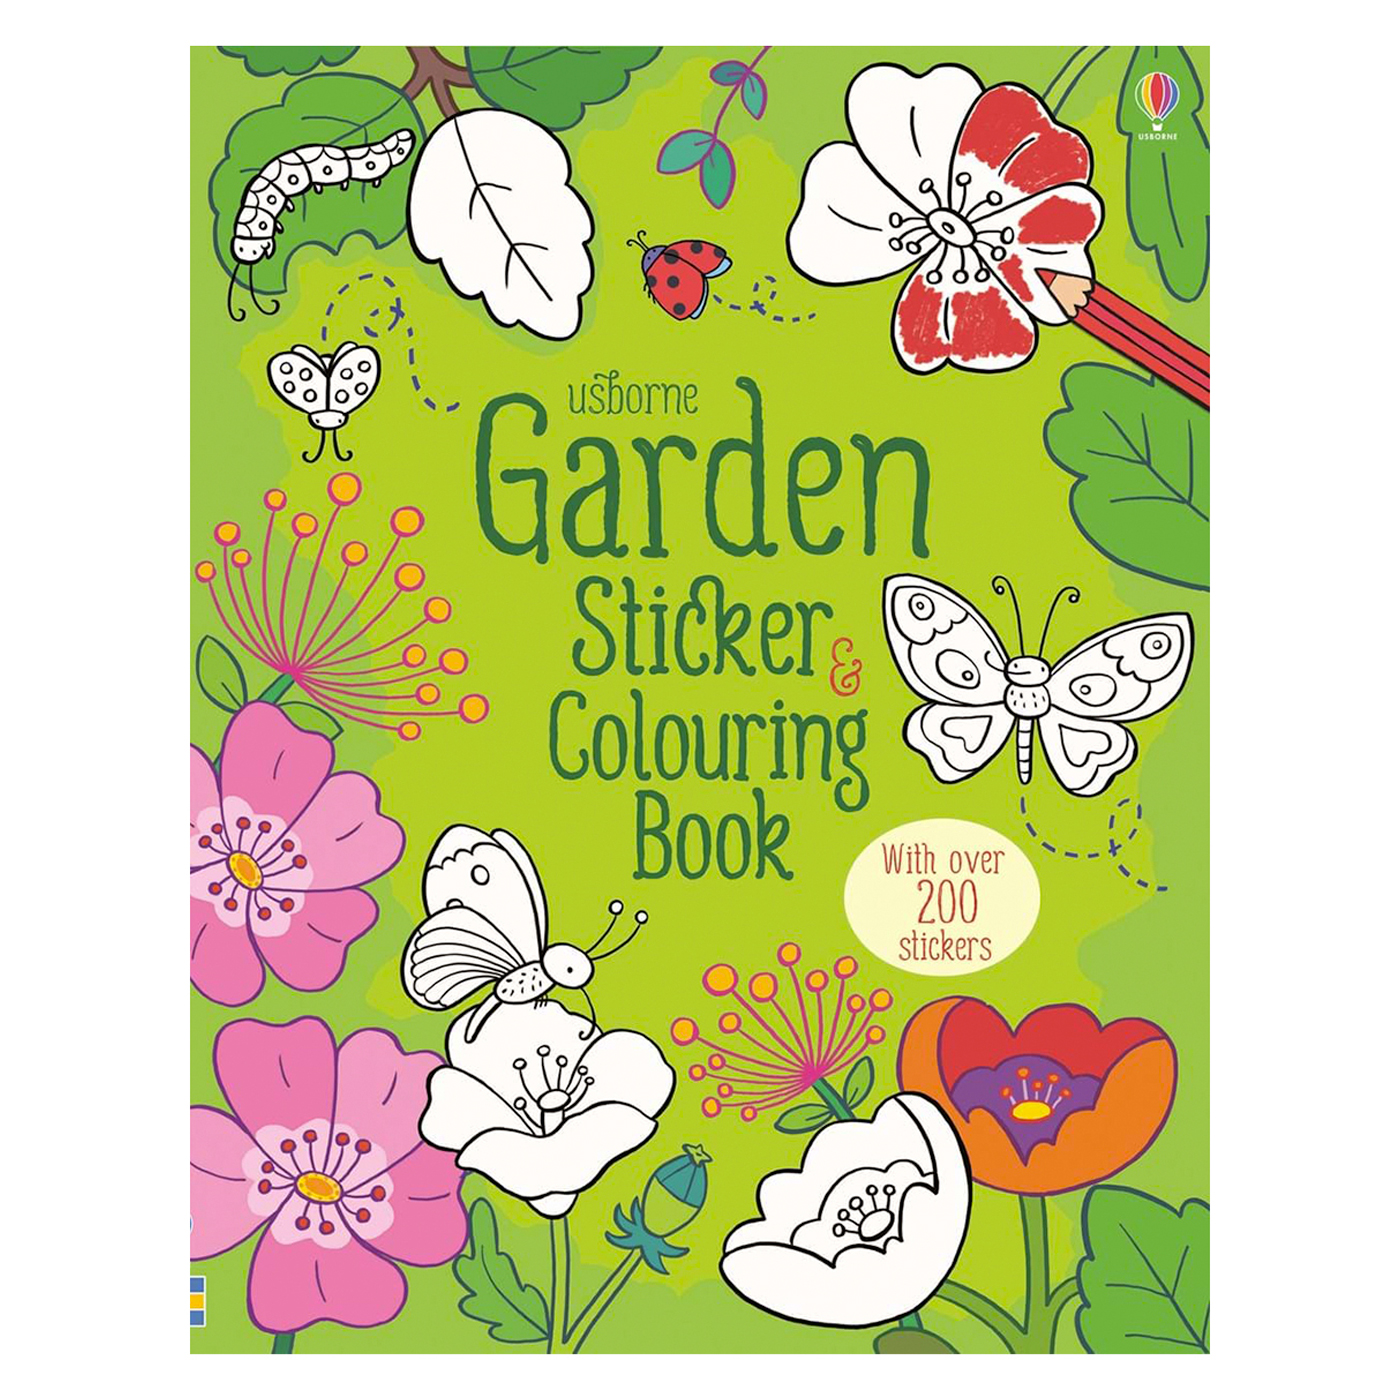  Garden Sticker & Colouring Book